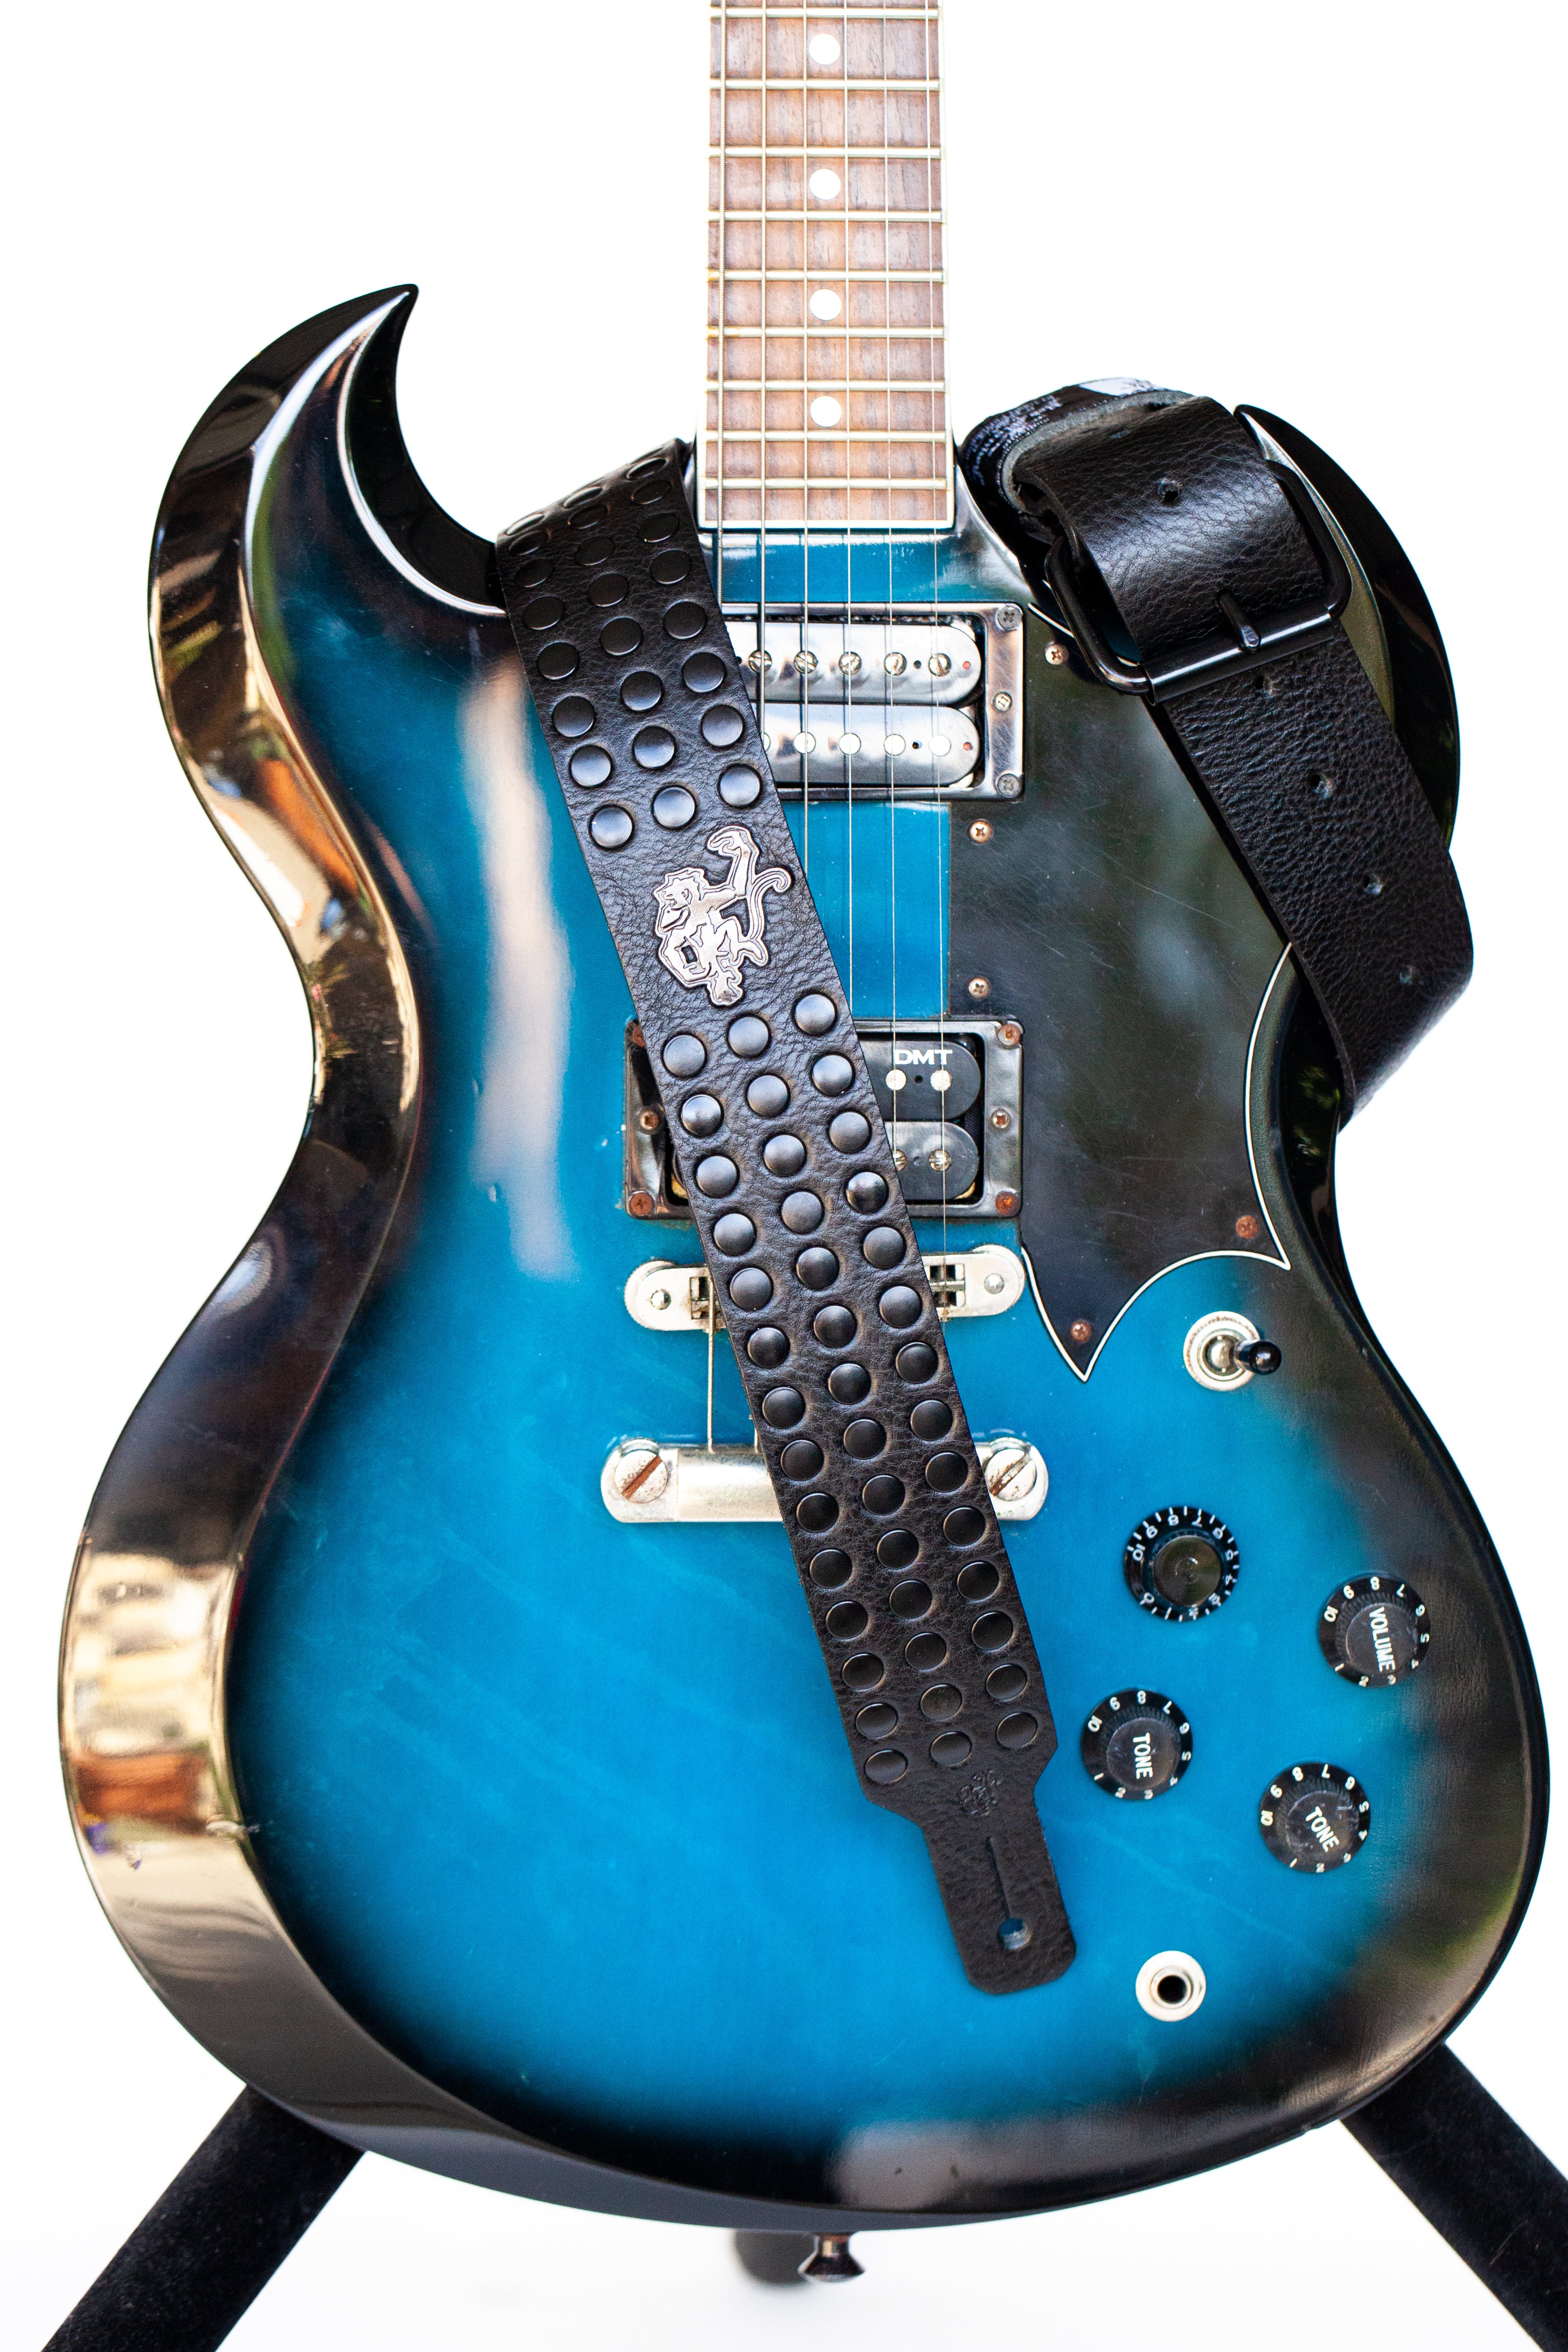 Genuine Leather Guitar Shoulder Straps - 1.25